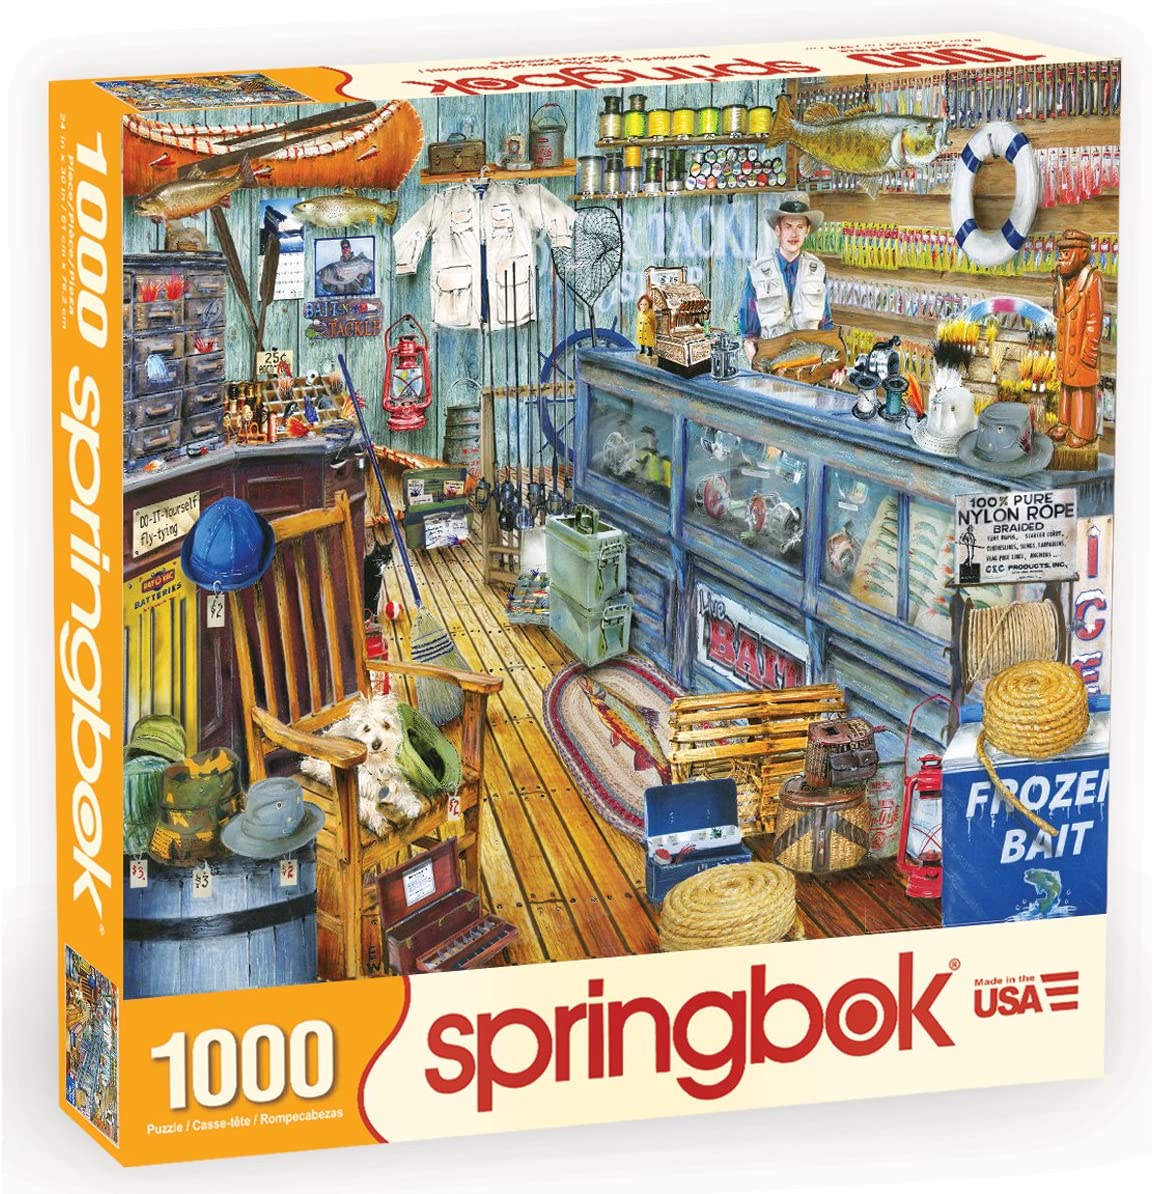 The Bait Shop (1000 pc puzzle)